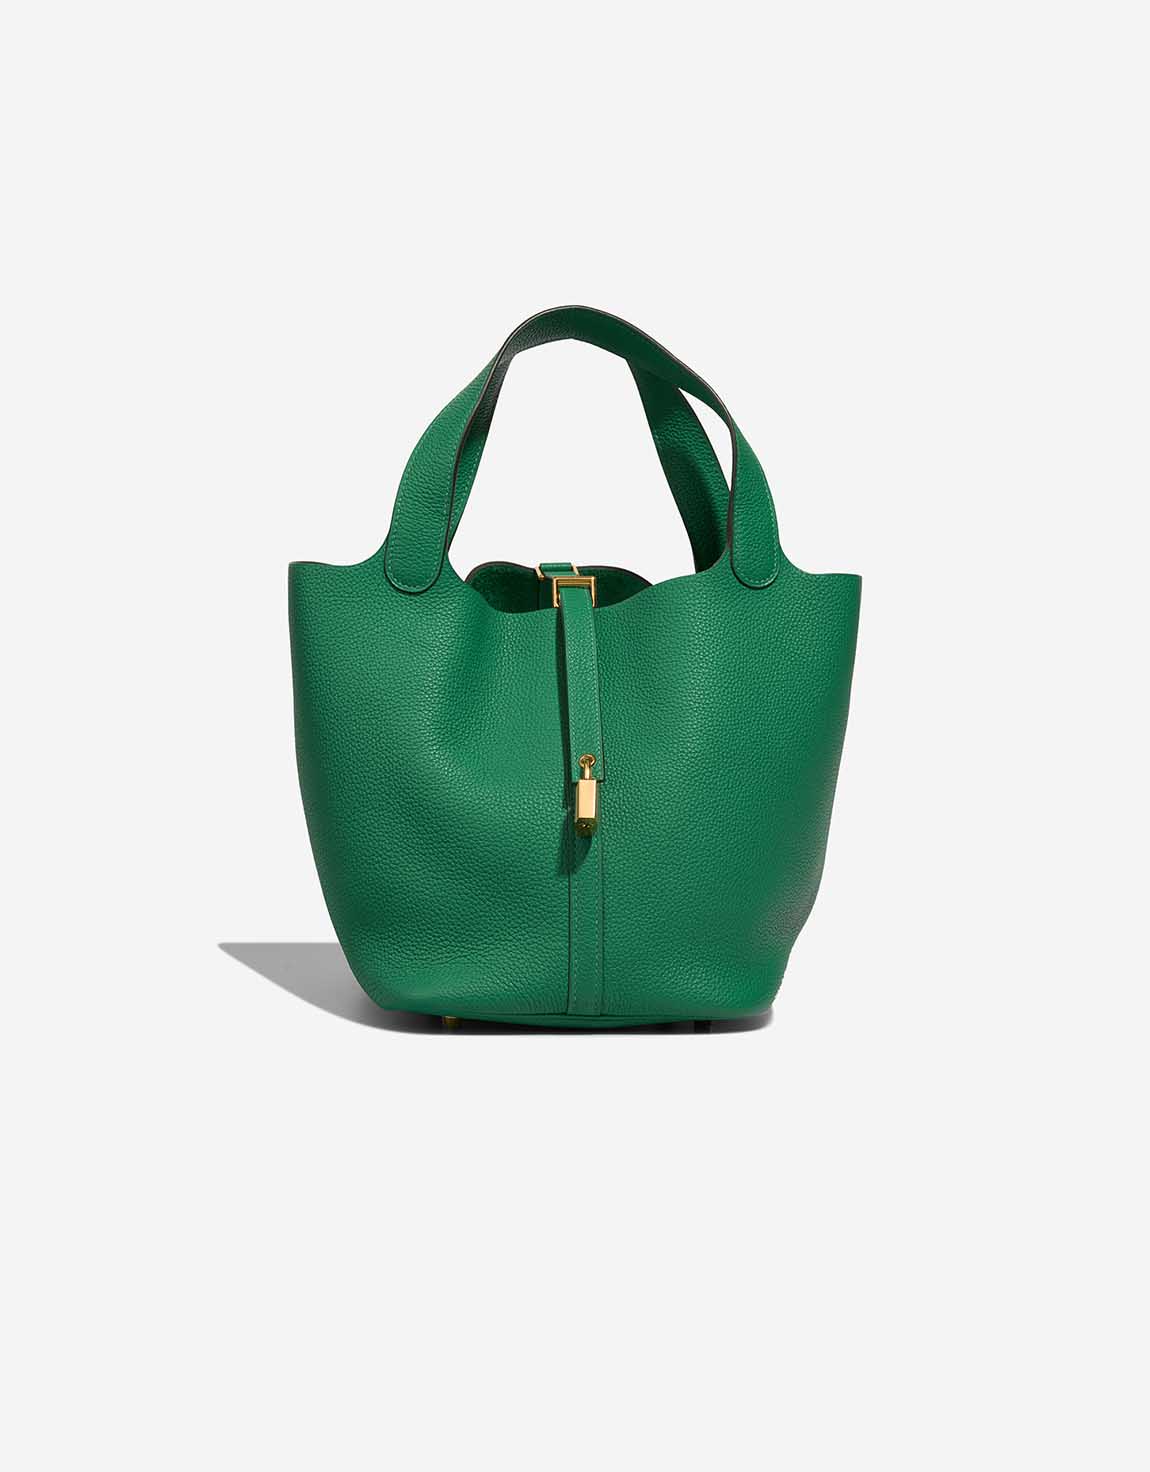 Hermès Picotin 22 Taurillon Clémence Vert Jade | SACLÀB